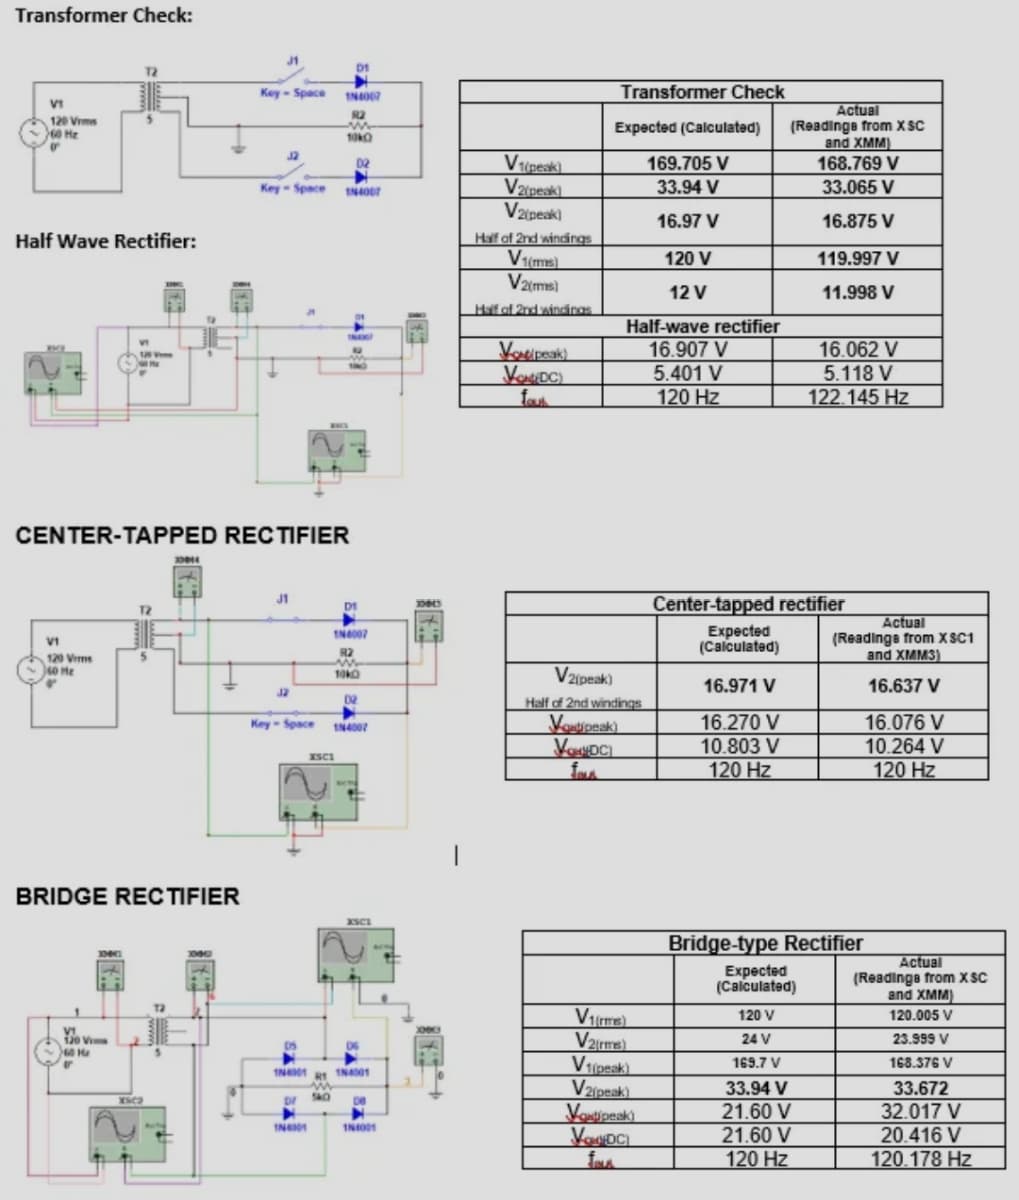 Transformer Check:
J1
D1
Key - Space
Transformer Check
Actual
(Readinge from x SC
and XMM)
168.769 V
R2
120 Vrms
60 He
Expected (Calculated)
J2
02
169.705 V
V2ipeak)
V2peak)
Key- Space
33.94 V
33.065 V
16.97 V
16.875 V
Half Wave Rectifier:
Half of 2nd windings
120 V
119.997 V
V2ims)
12 V
11.998 V
Haf of 2nd windings
Half-wave rectifier
16.062 V
5.118 V
122.145 Hz
Voupeak
16.907 V
5.401 V
120 Hz
VI
fa
CENTER-TAPPED RECTIFIER
J1
Center-tapped rectifier
D1
Expected
(Calculated)
Actual
(Readings from X SC1
and XMM3)
VI
R2
120 Vrms
40 He
V2(peak)
16.971 V
16.637 V
J2
D2
Half of 2nd windings
Voutipnak).
VOUDCI
16.270 V
10.803 V
120 Hz
16.076 V
10.264 V
120 Hz
Key-Space
IN4007
ISCI
BRIDGE REC TIFIER
XSCI
Bridge-type Rectifier
Expected
(Calculated)
Actual
(Readinga from X SC
and XMM)
V(me)
V2eme)
V1ipeak)
Vzipeak)
Voutipeak)
120 V
120.005 V
24 V
23.999 V
169.7 V
168.376 V
33.94 V
33.672
21.60 V
21.60 V
120 Hz
32.017 V
20.416 V
120.178 Hz
INA
INO
